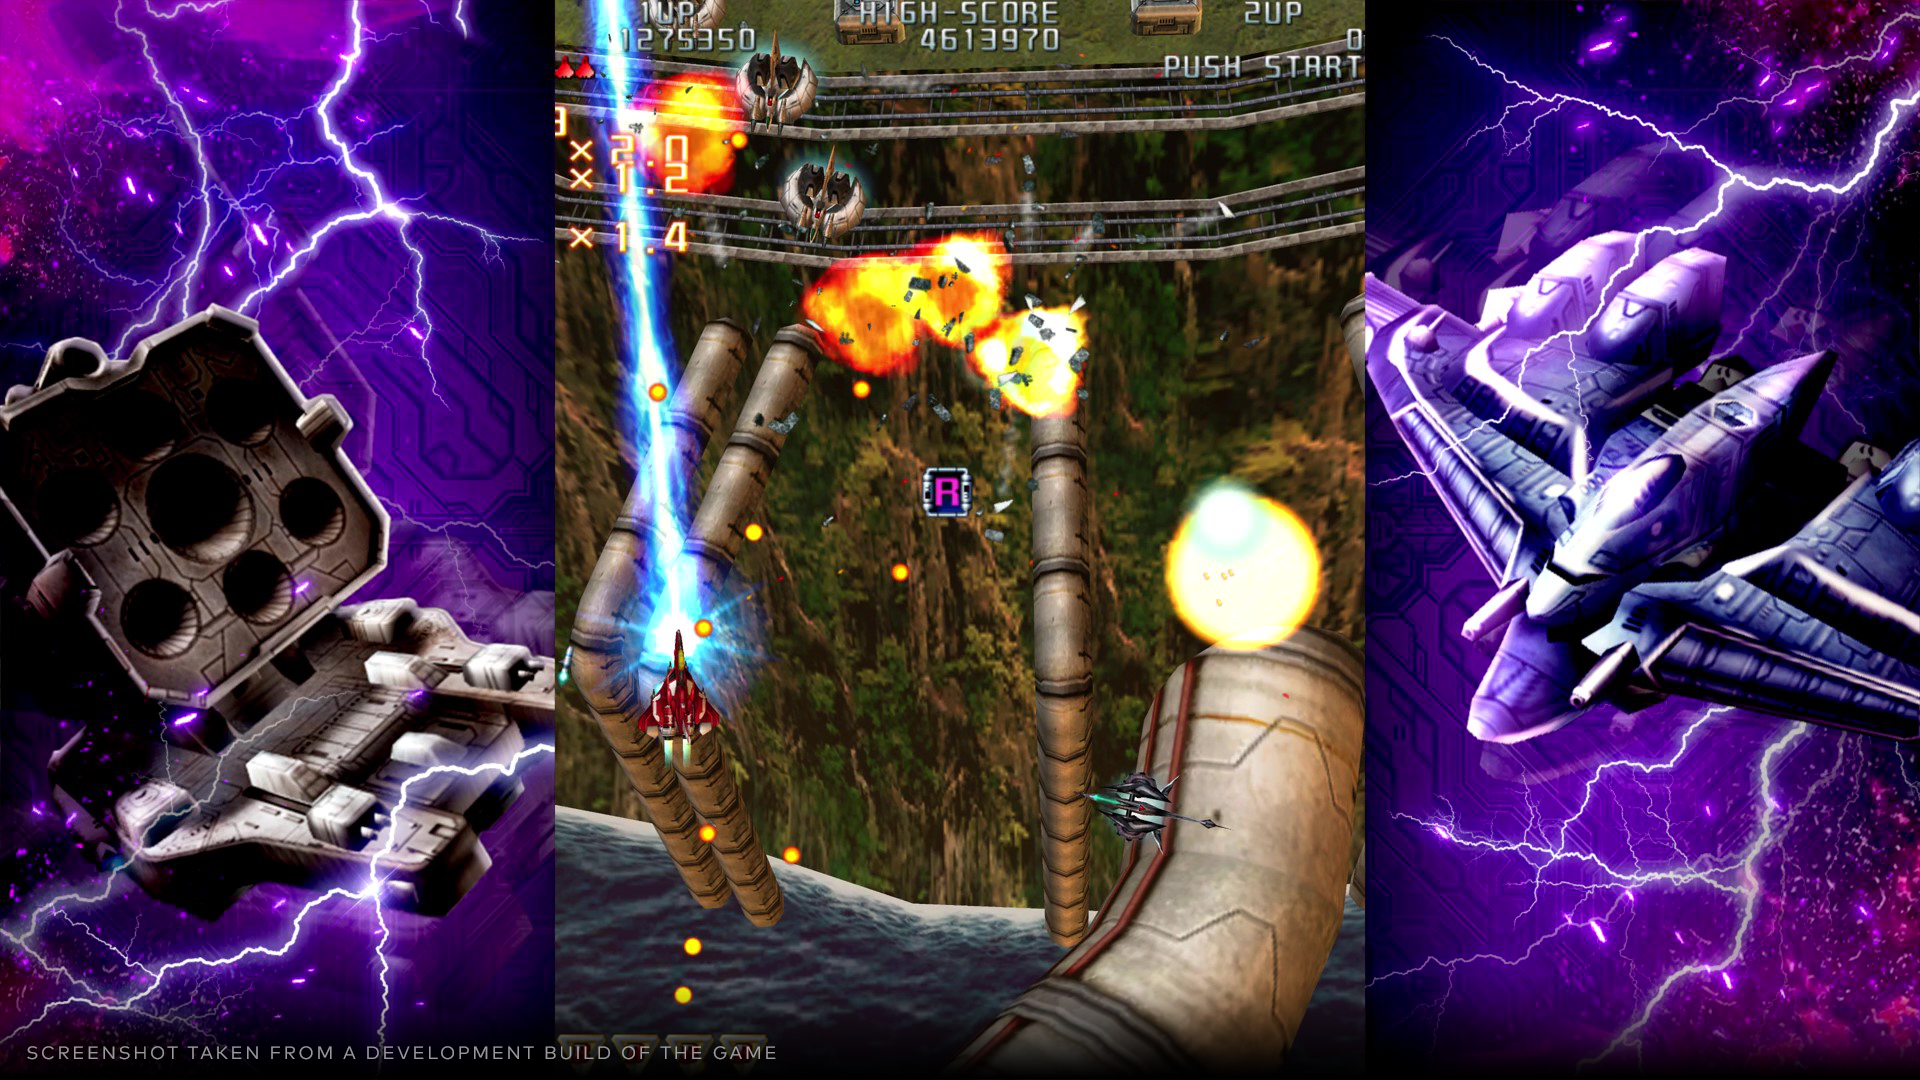 Raiden III x MIKADO MANIAX  - Deluxe Edition - PS5®